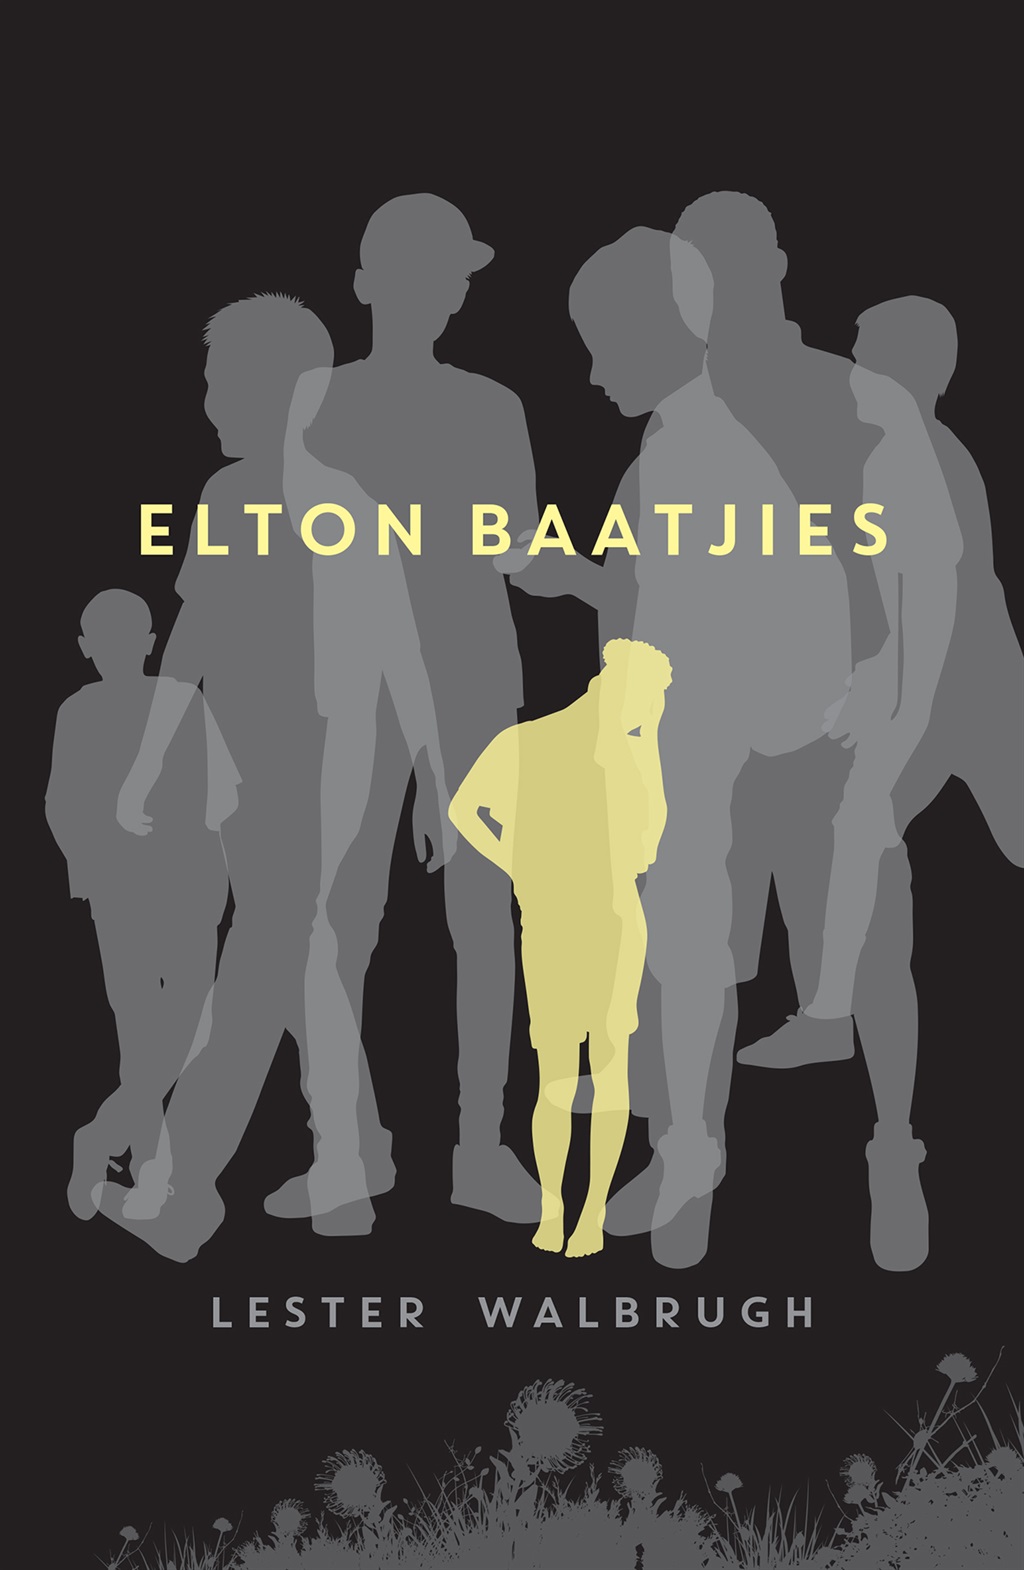 Elton Baatjies by Lester Walbrugh. 